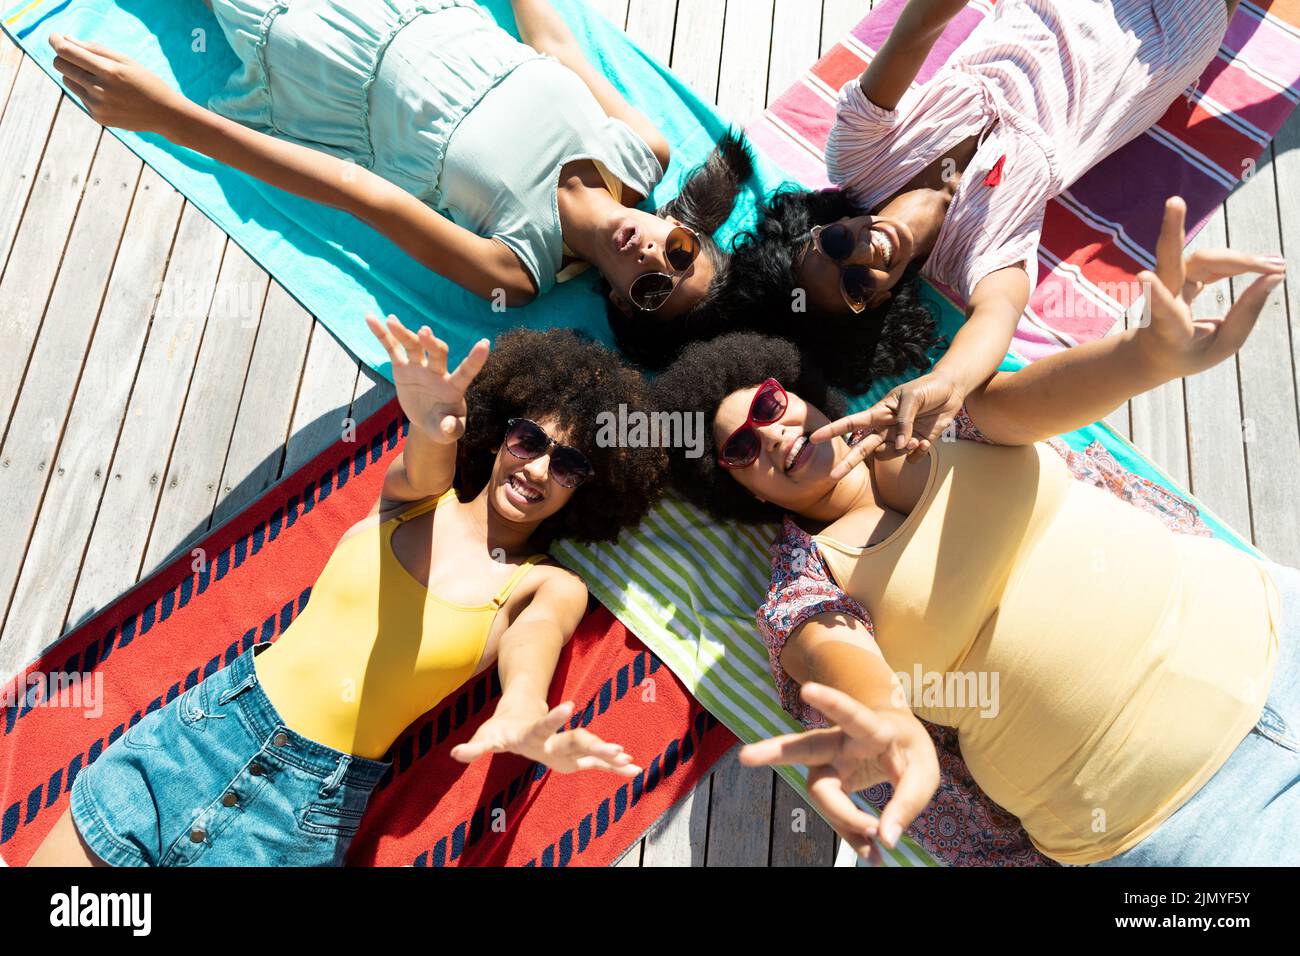 Vue en grand angle des amis biraciaux heureux portant des lunettes de soleil faisant des gestes tout en étant allongé sur des serviettes au bord de la piscine Banque D'Images